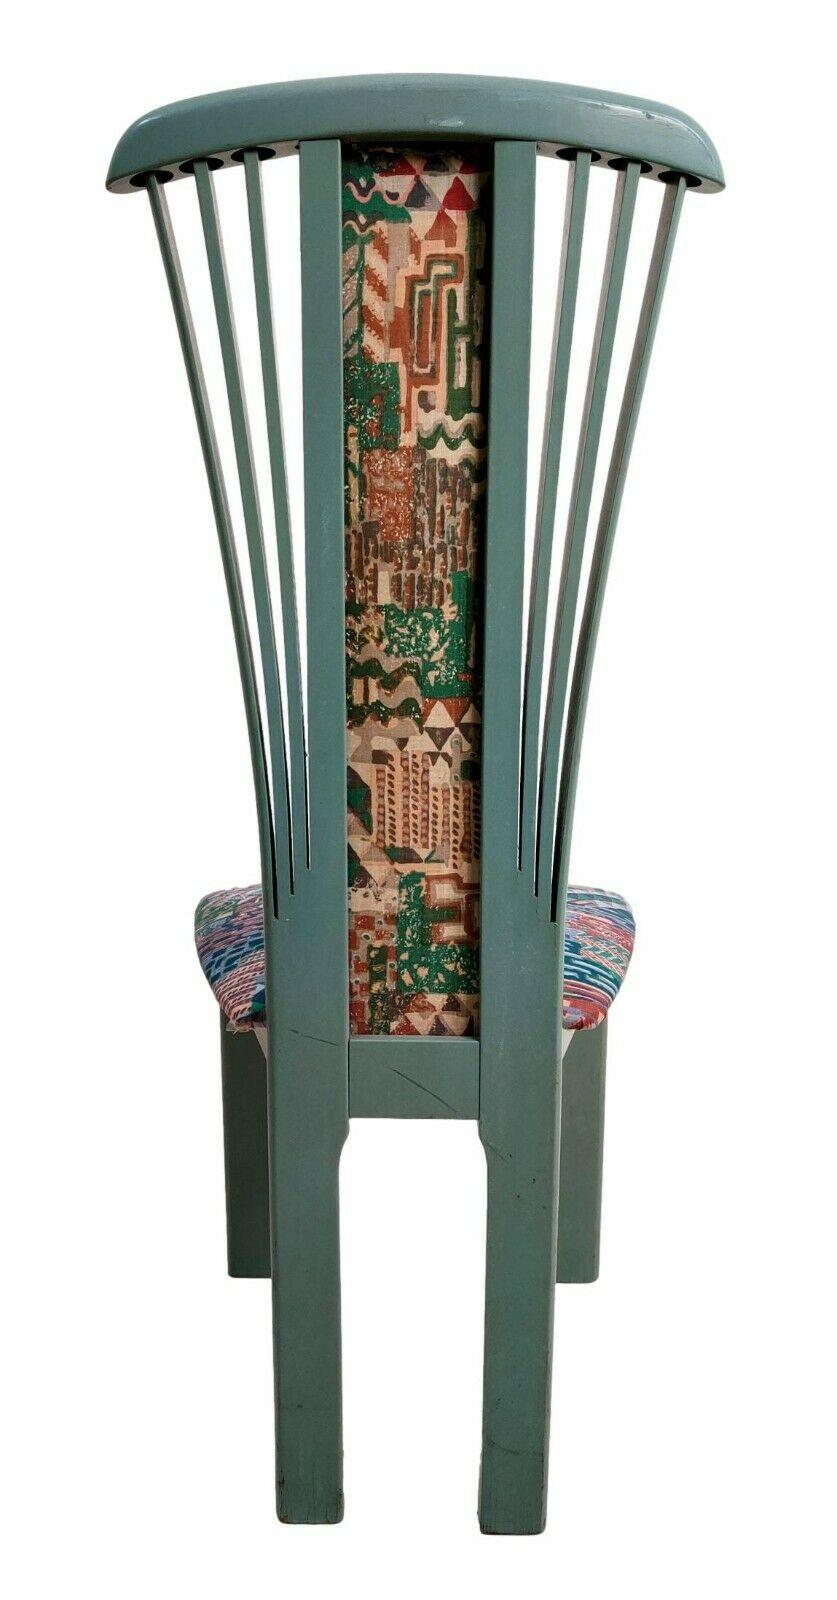 Ensemble de quatre chaises originales des années 70, fabriquées dans le style de Pierre Cardin, entièrement en bois avec rembourrage de l'assise et du dossier.

Couleur bleu avion, tissu polychrome.

Ils mesurent 110 cm de hauteur, 47 cm de